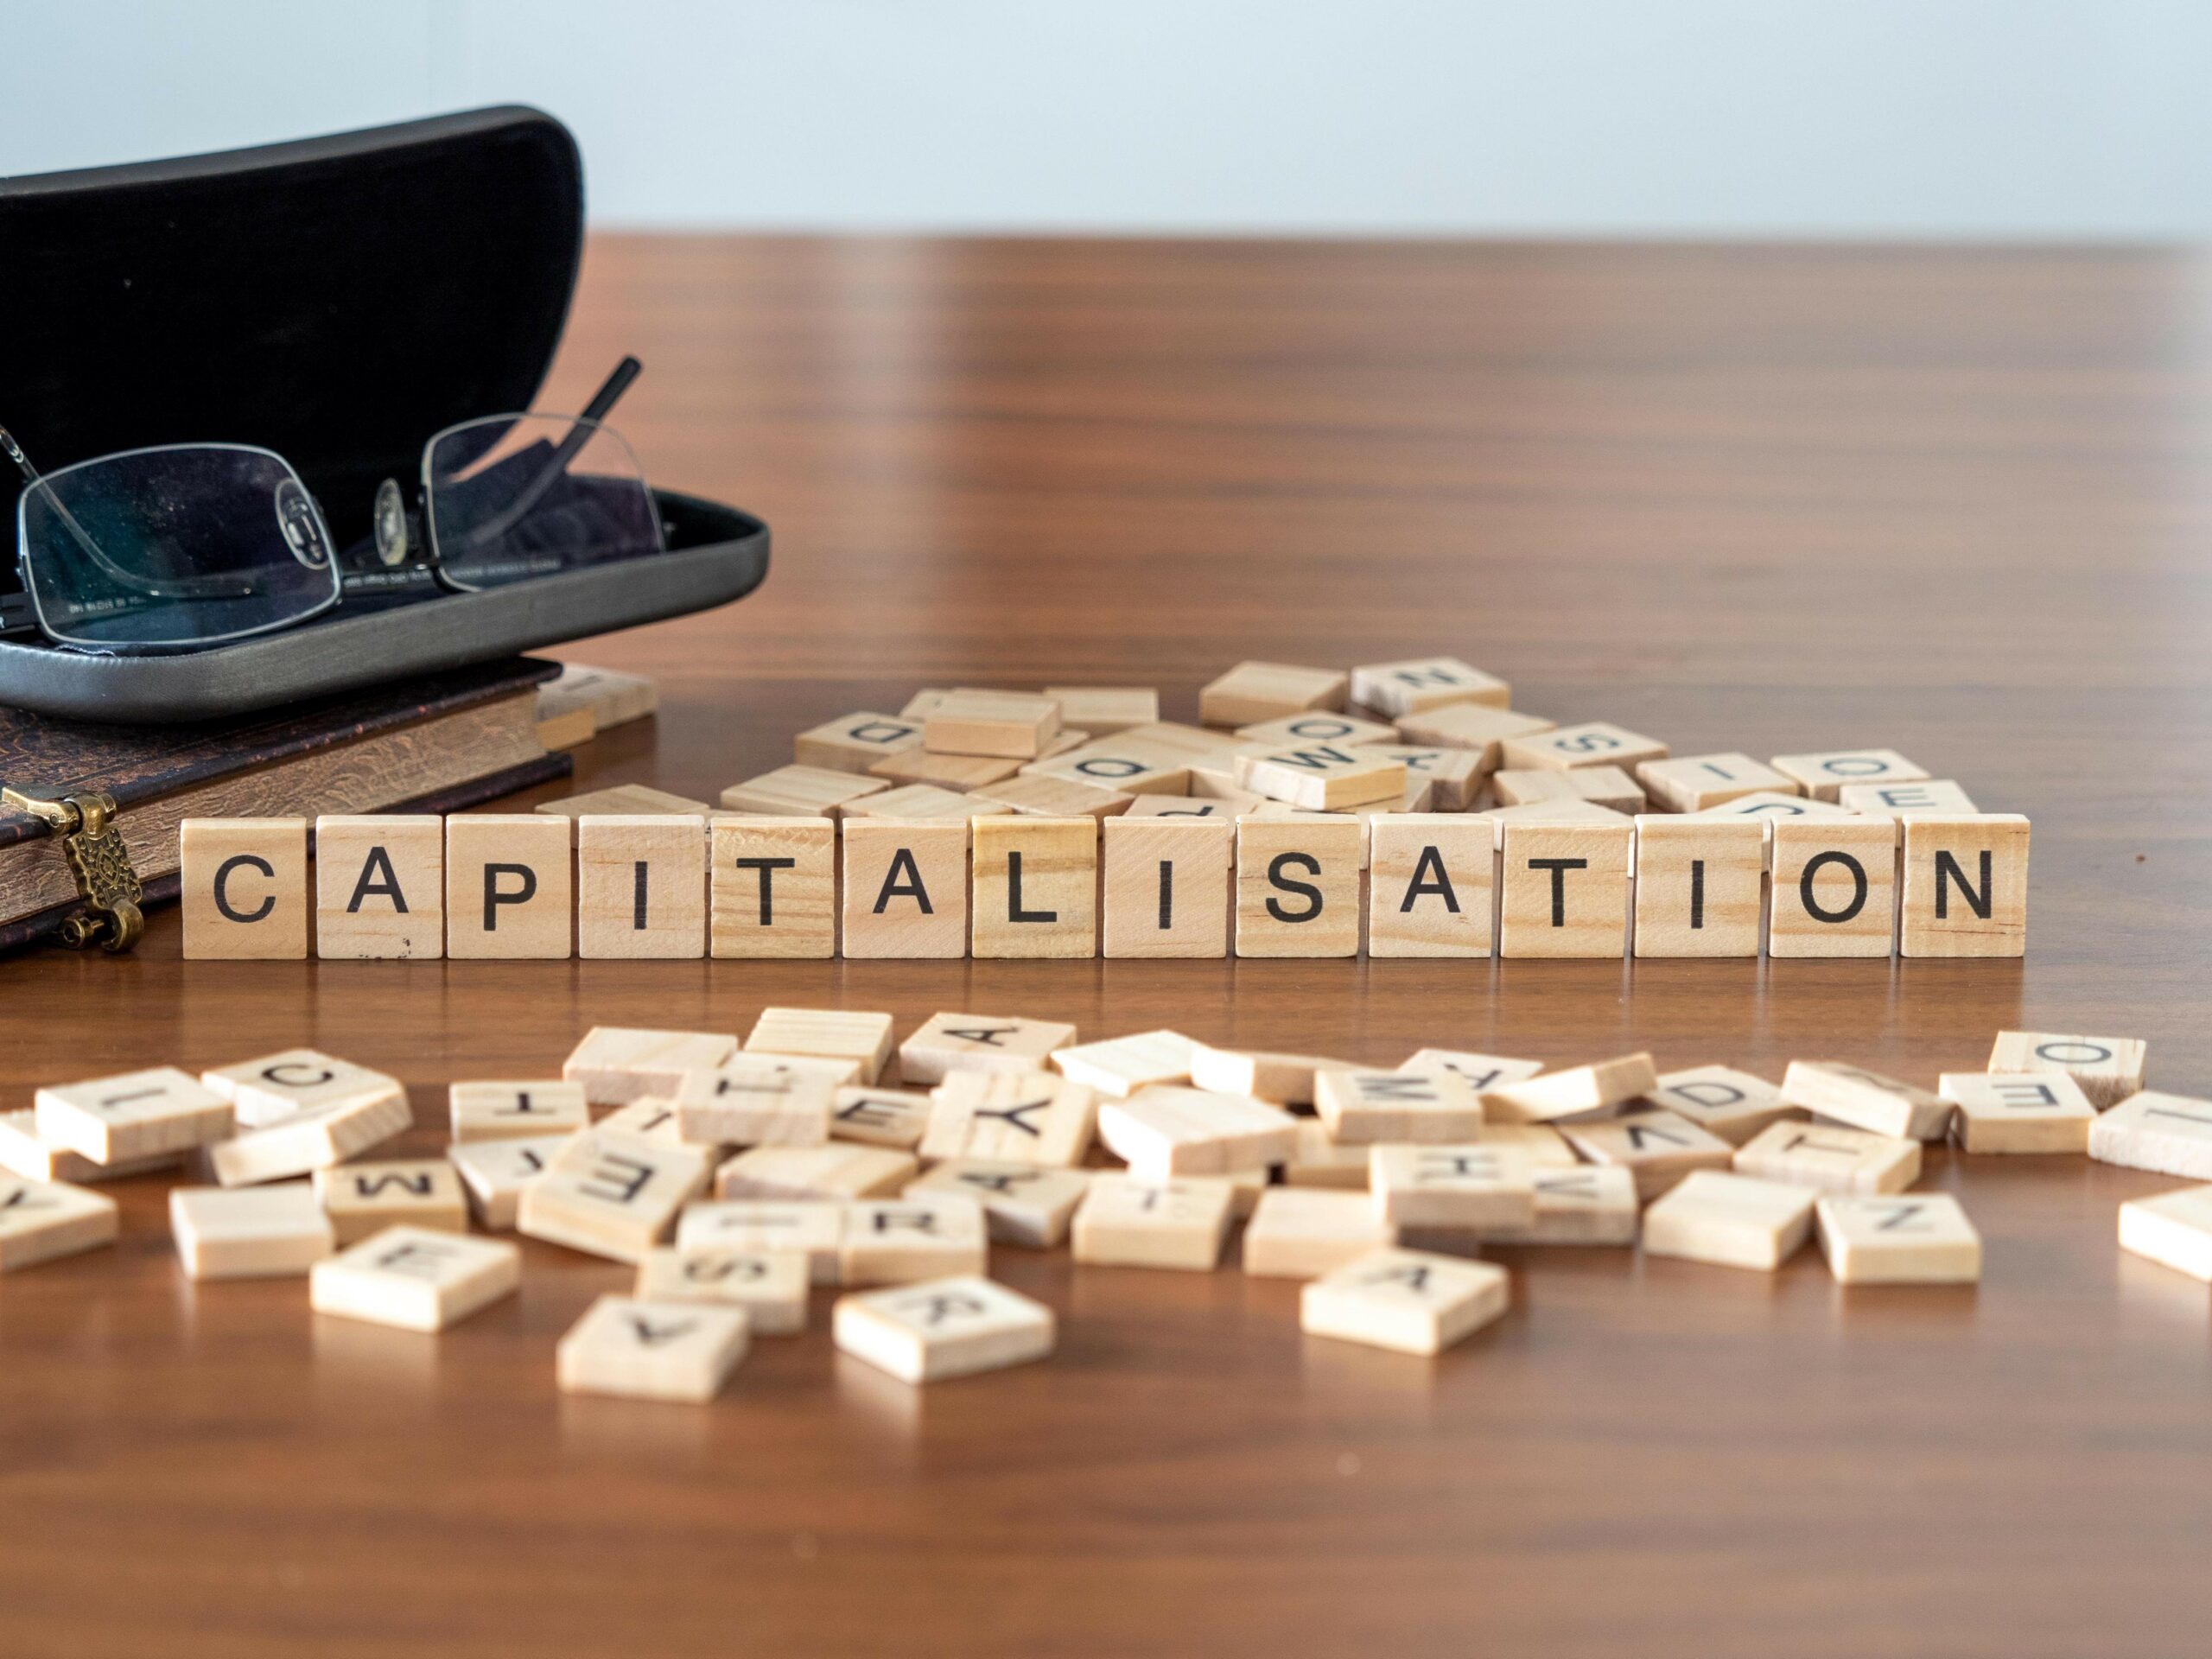 Carrés en bois alignés sur une table pour former le mot "Capitalisation" en noir, à la manière d'un jeu de scrabble.